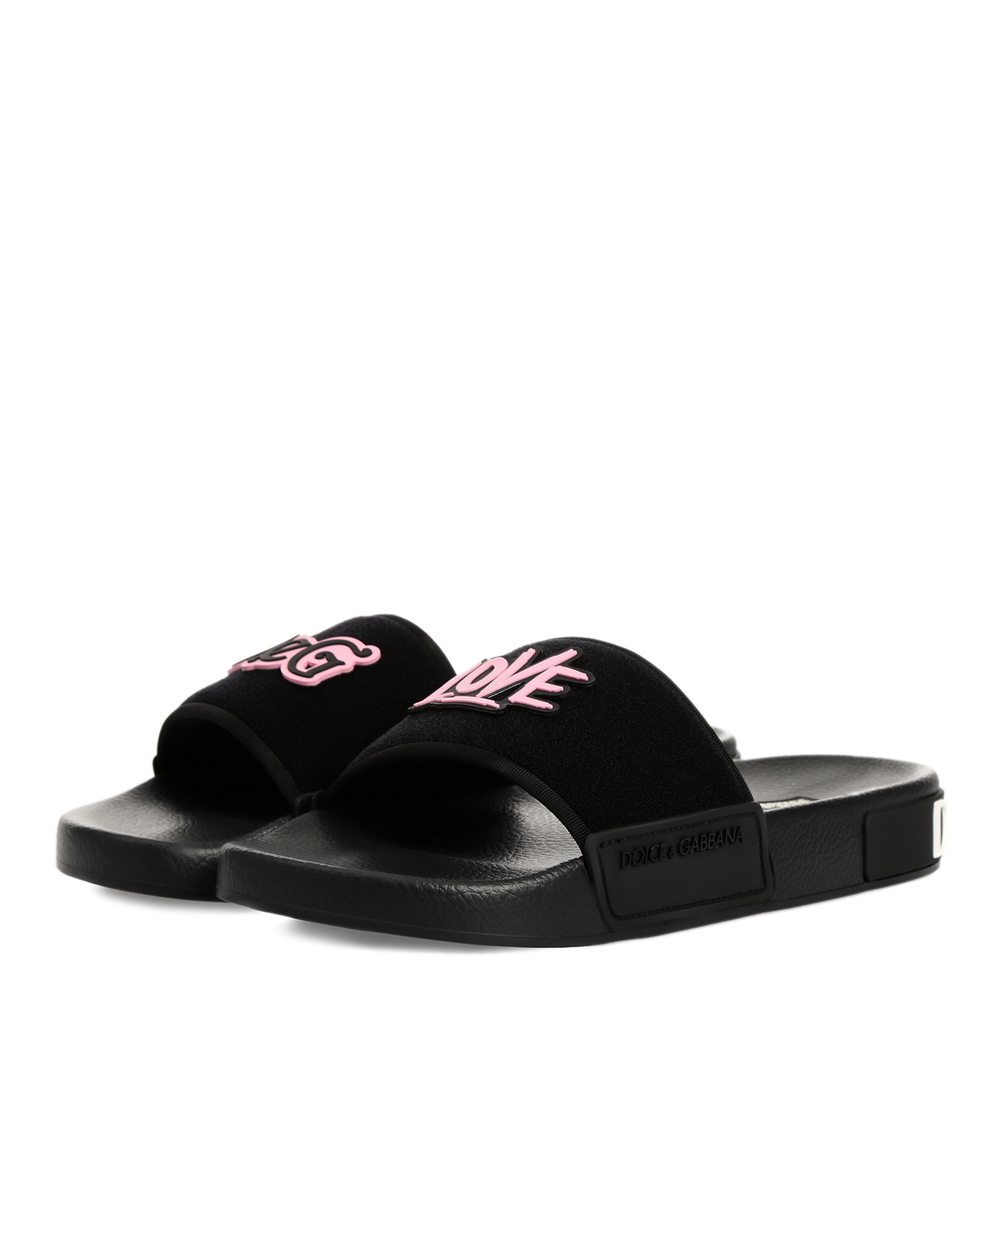 Слайдеры Dolce&Gabbana CW0132-AA108, черный цвет • Купить в интернет-магазине Kameron